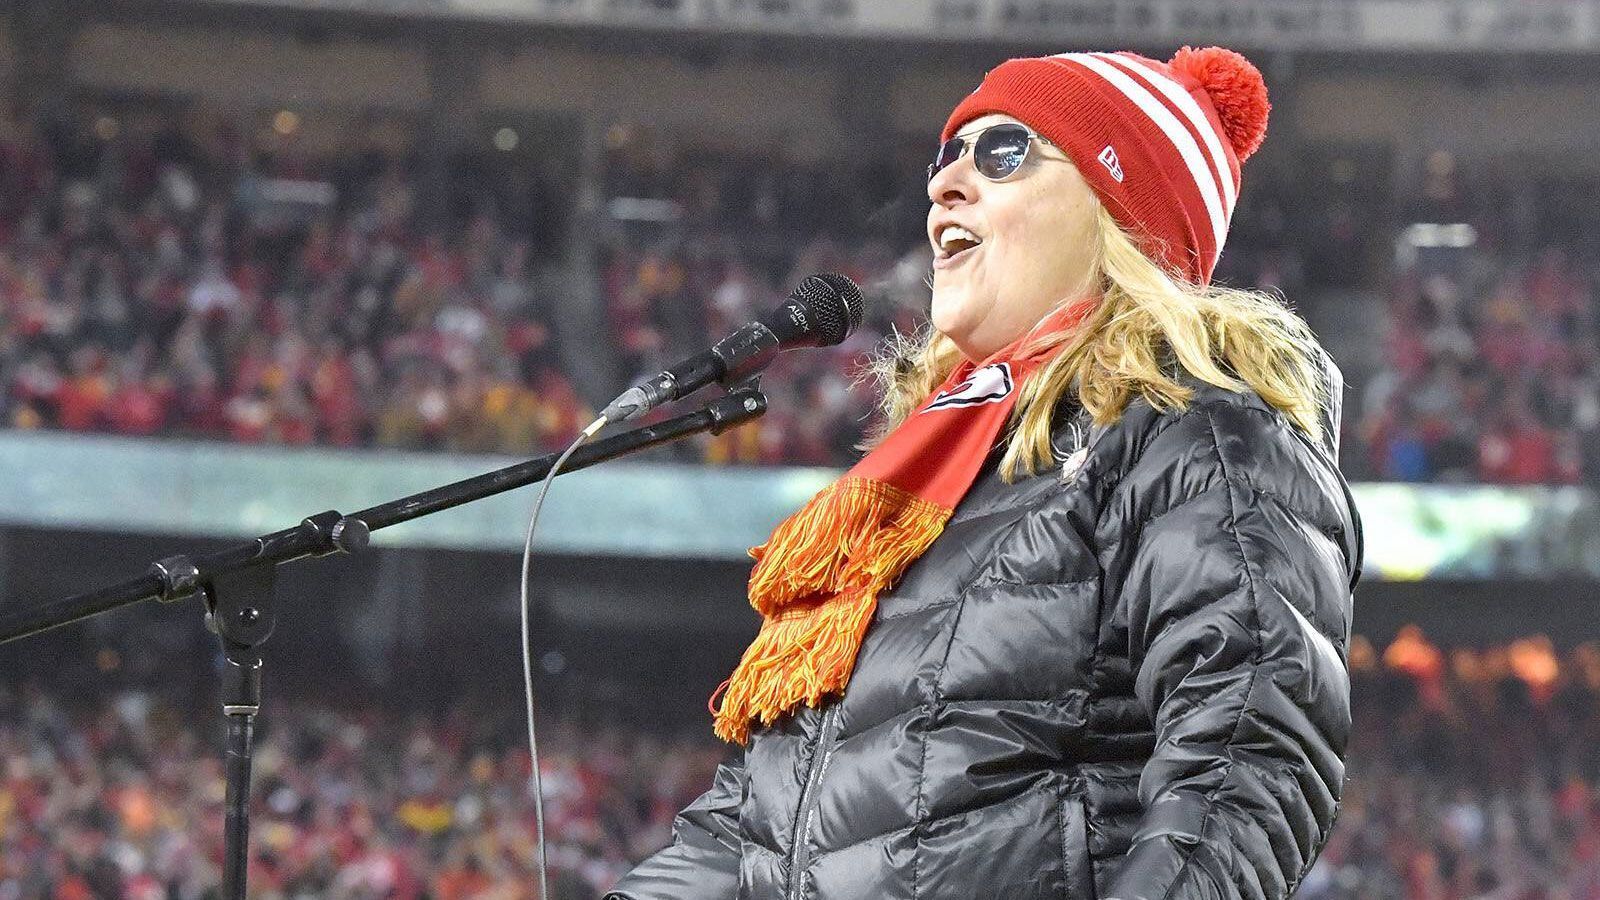 <strong>Melissa Etheridge (Kansas City Chiefs) </strong><br>
                Die Sängerin und Songwriterin Melissa Etheridge gewann 2007 mit ihrem Track "I need to wake up" einen Oscar in der Kategorie Bester Song. 13 Jahre später durfte sie erneut jubeln - ihre Chiefs krönten sich nach dem Sieg über die 49ers zum NFL-Champion. Zuvor sang sie im Championship Game sogar die US-Hymne. Auch dieses Jahr wird sie Mahomes, Kelce und Co. die Daumen drücken.
